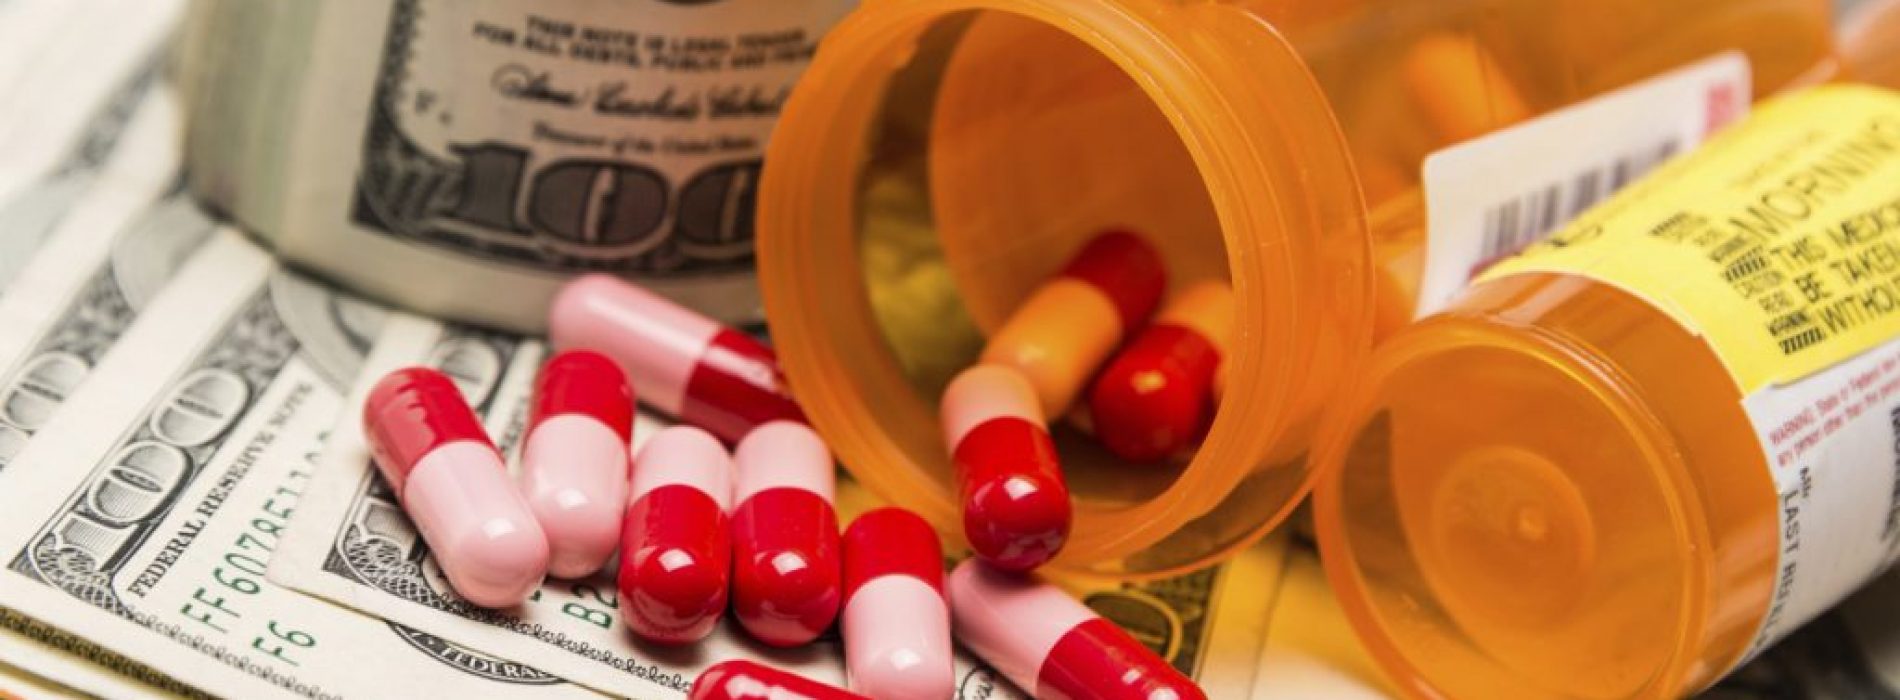 Studie evalueert 185 meta-analyses van antidepressiva en vindt een sterke invloed van Big Pharma